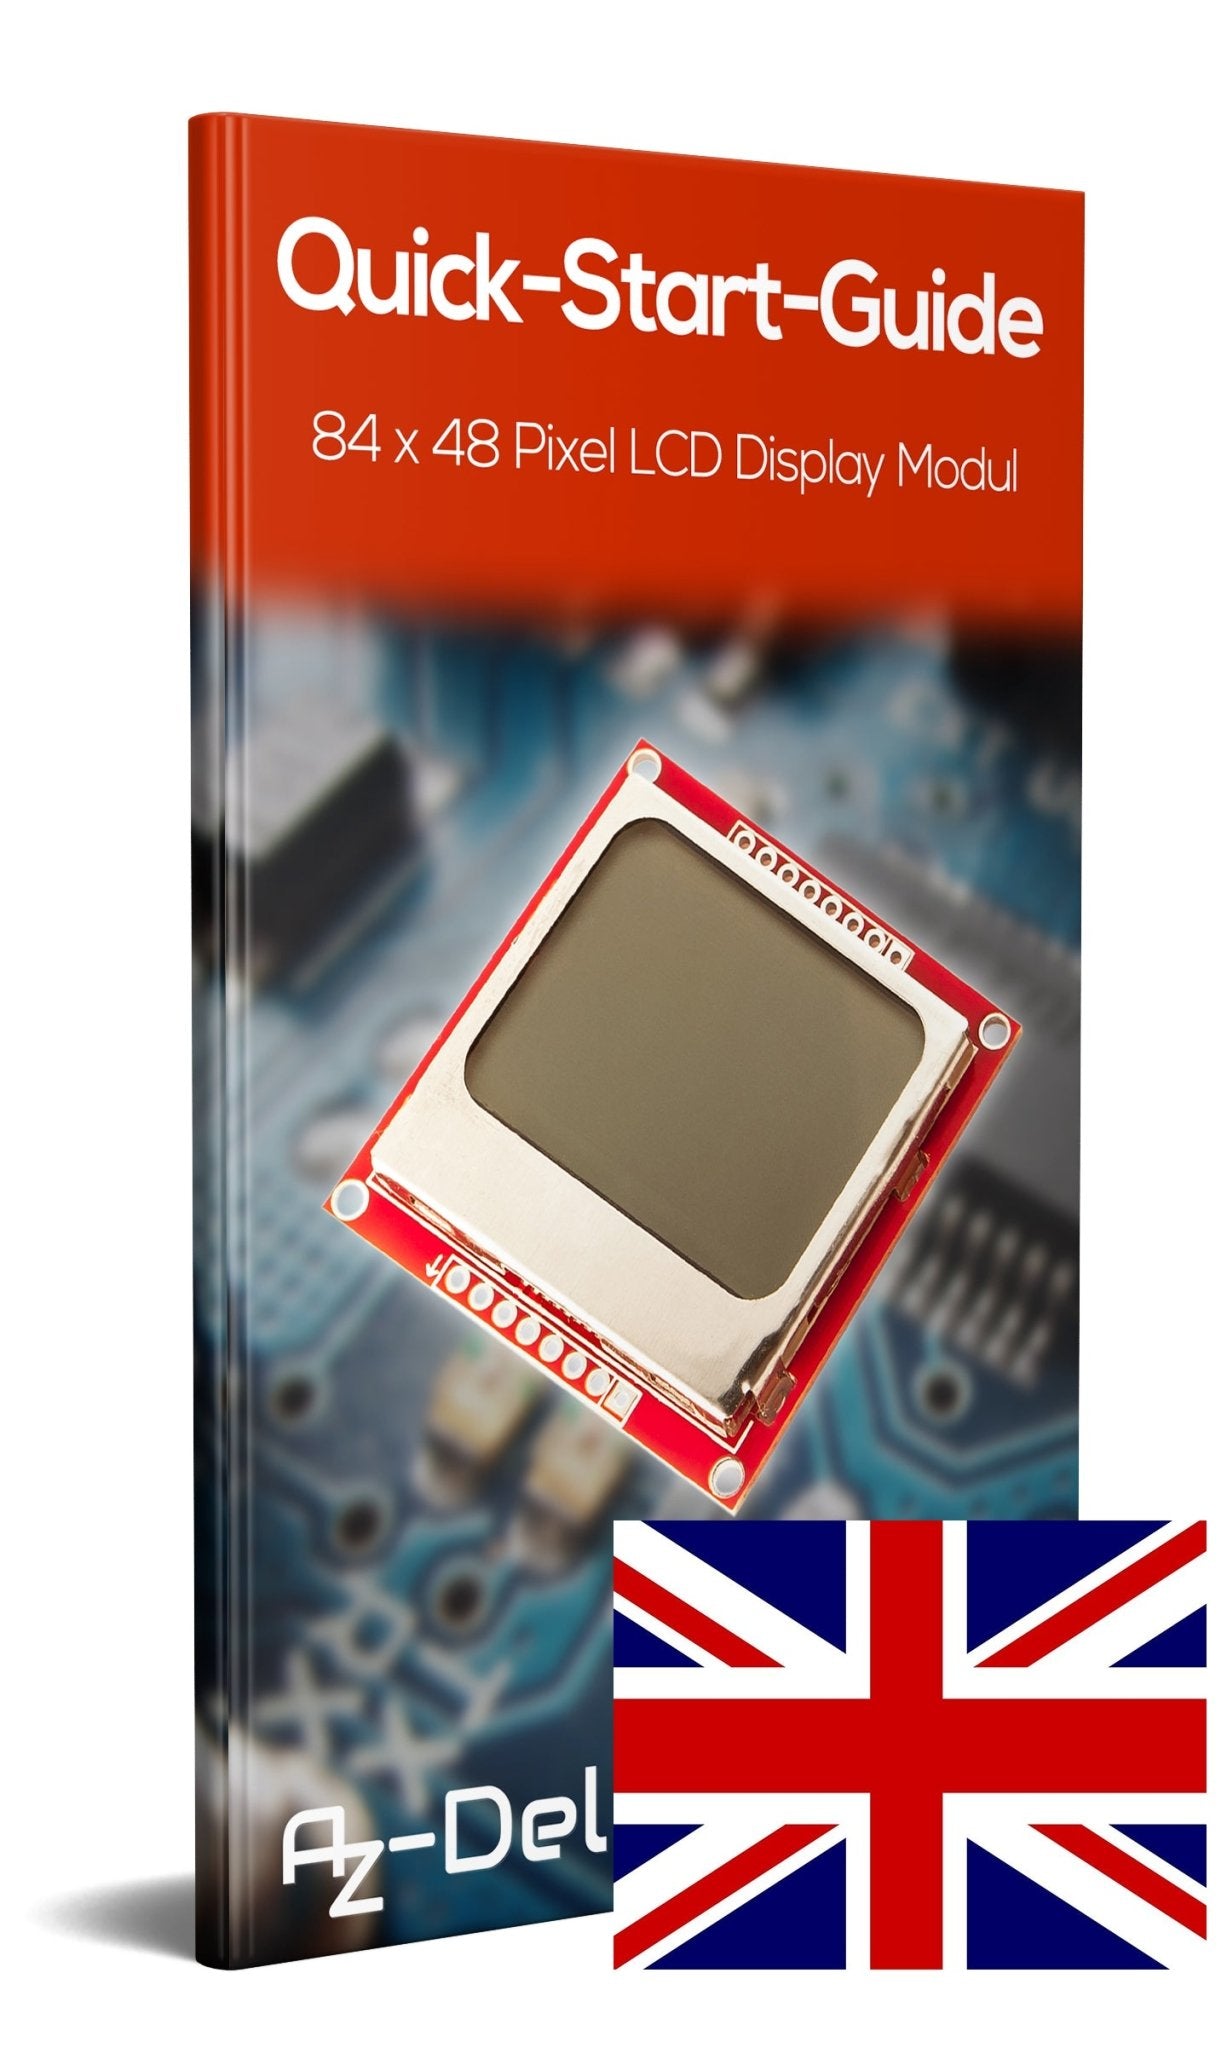 84 x 48 Pixel LCD Display Modul mit Hintergrundbeleuchtung für Nokia 5110 und Joystick PS2 Gamepad - AZ-Delivery